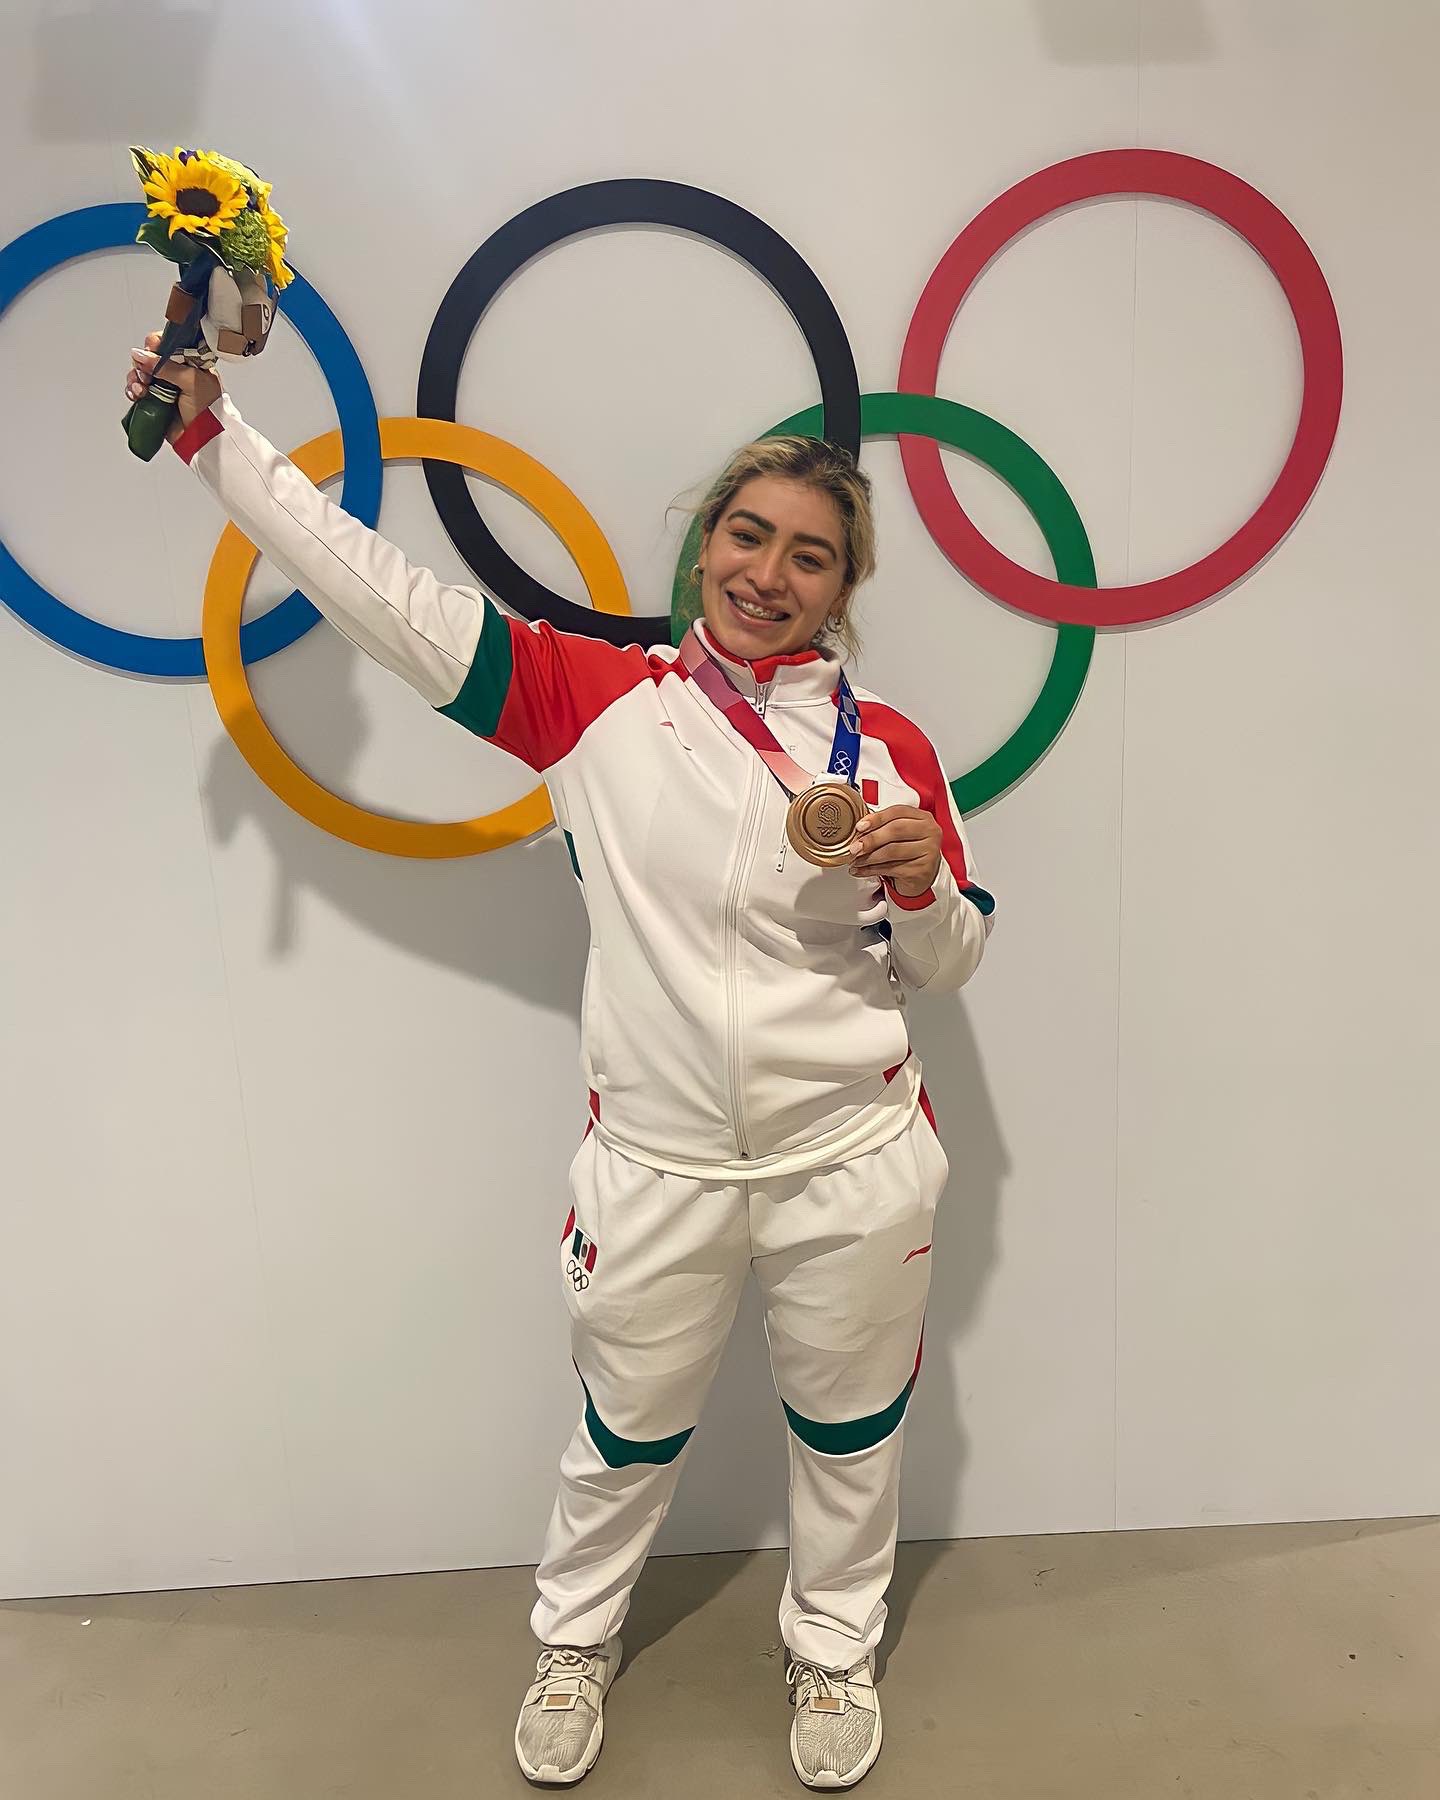 La mexicana Aremi Fuentes se cuelga la medalla de bronce en halterofilia #regionmx